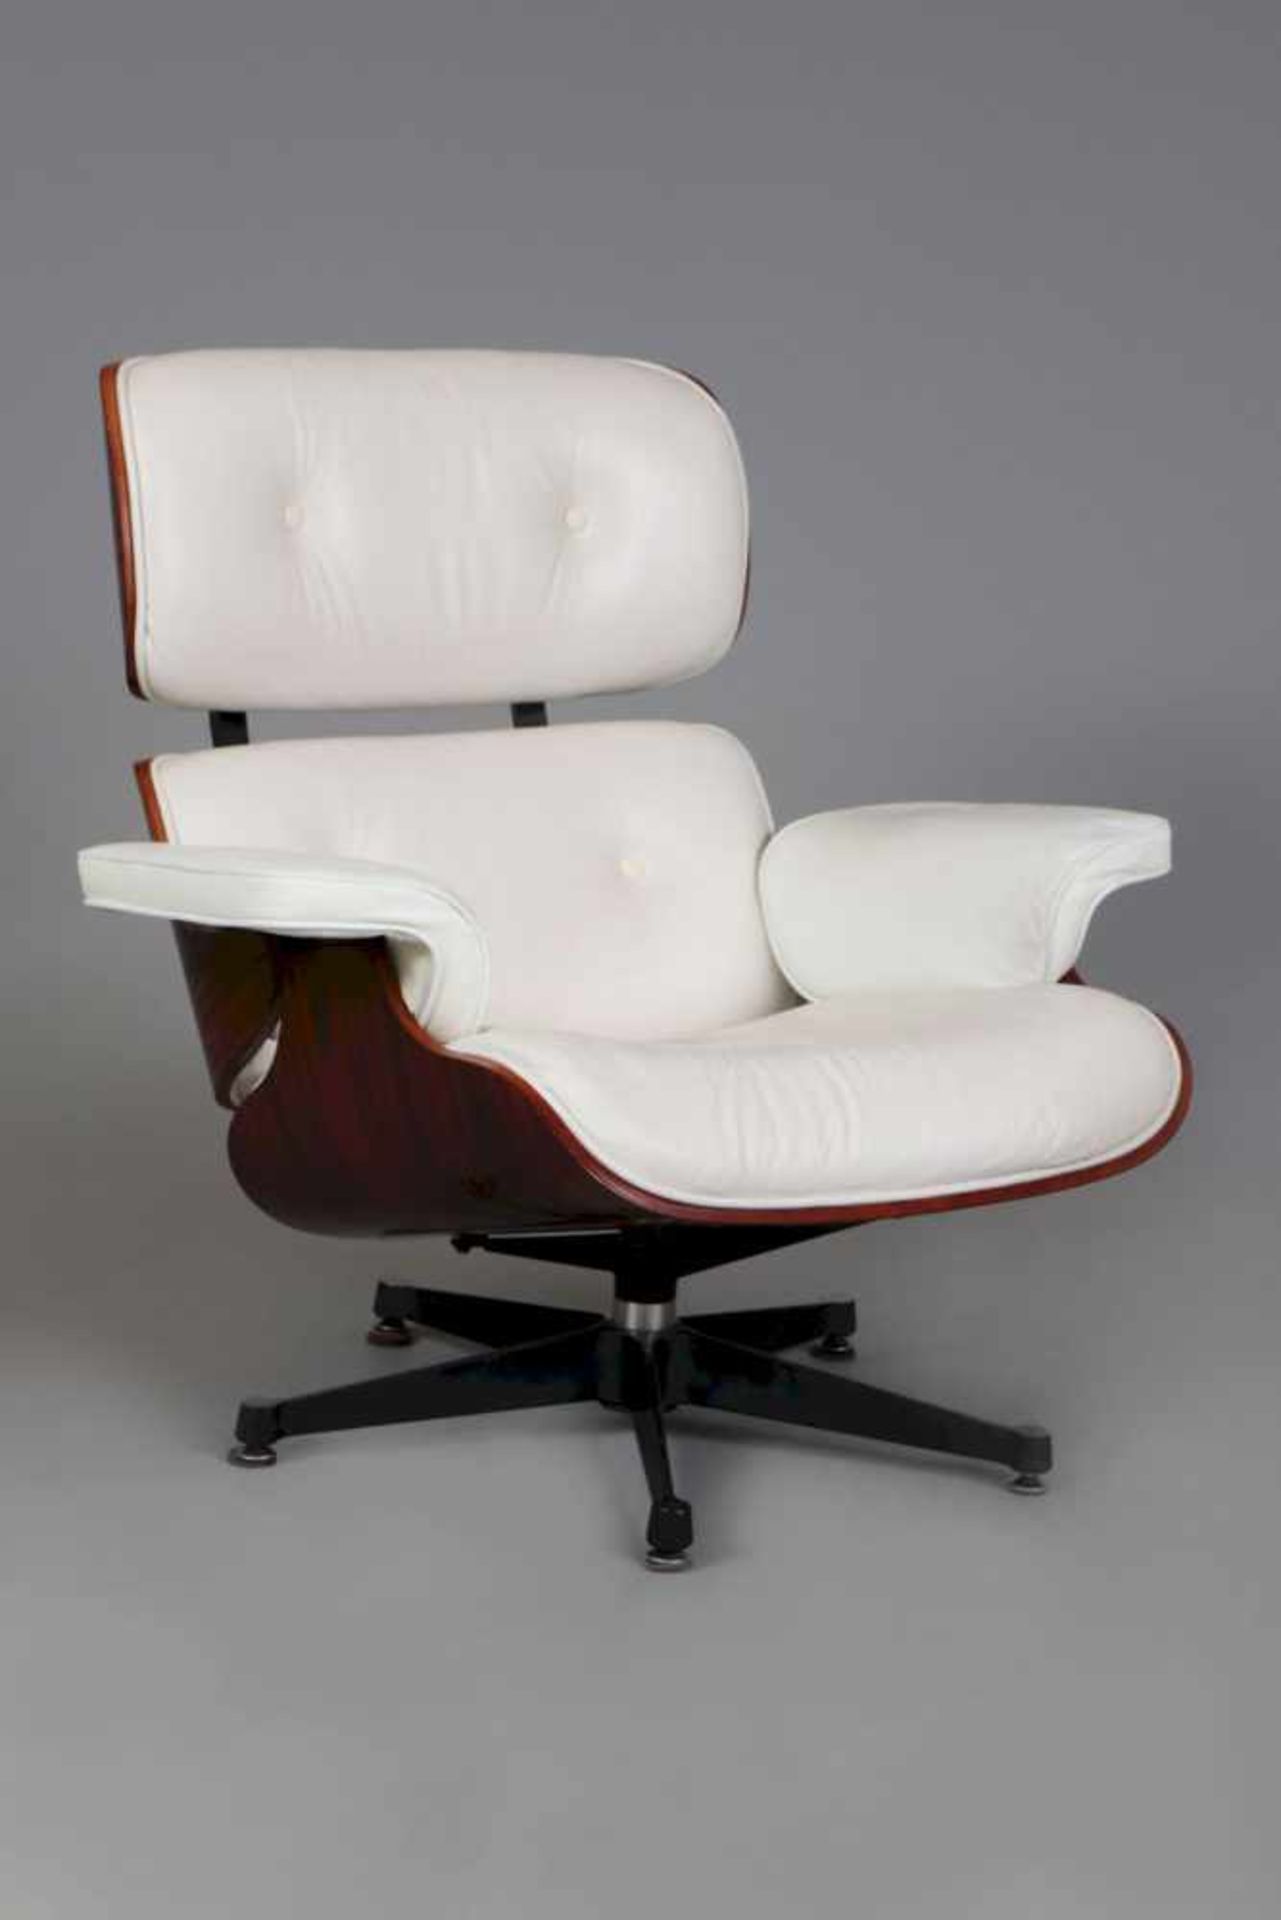 Armlehnsessel im Mid-Century Stil ¨Lounge¨ Form, gepolsterte und weiß belederte Sitzschale aus